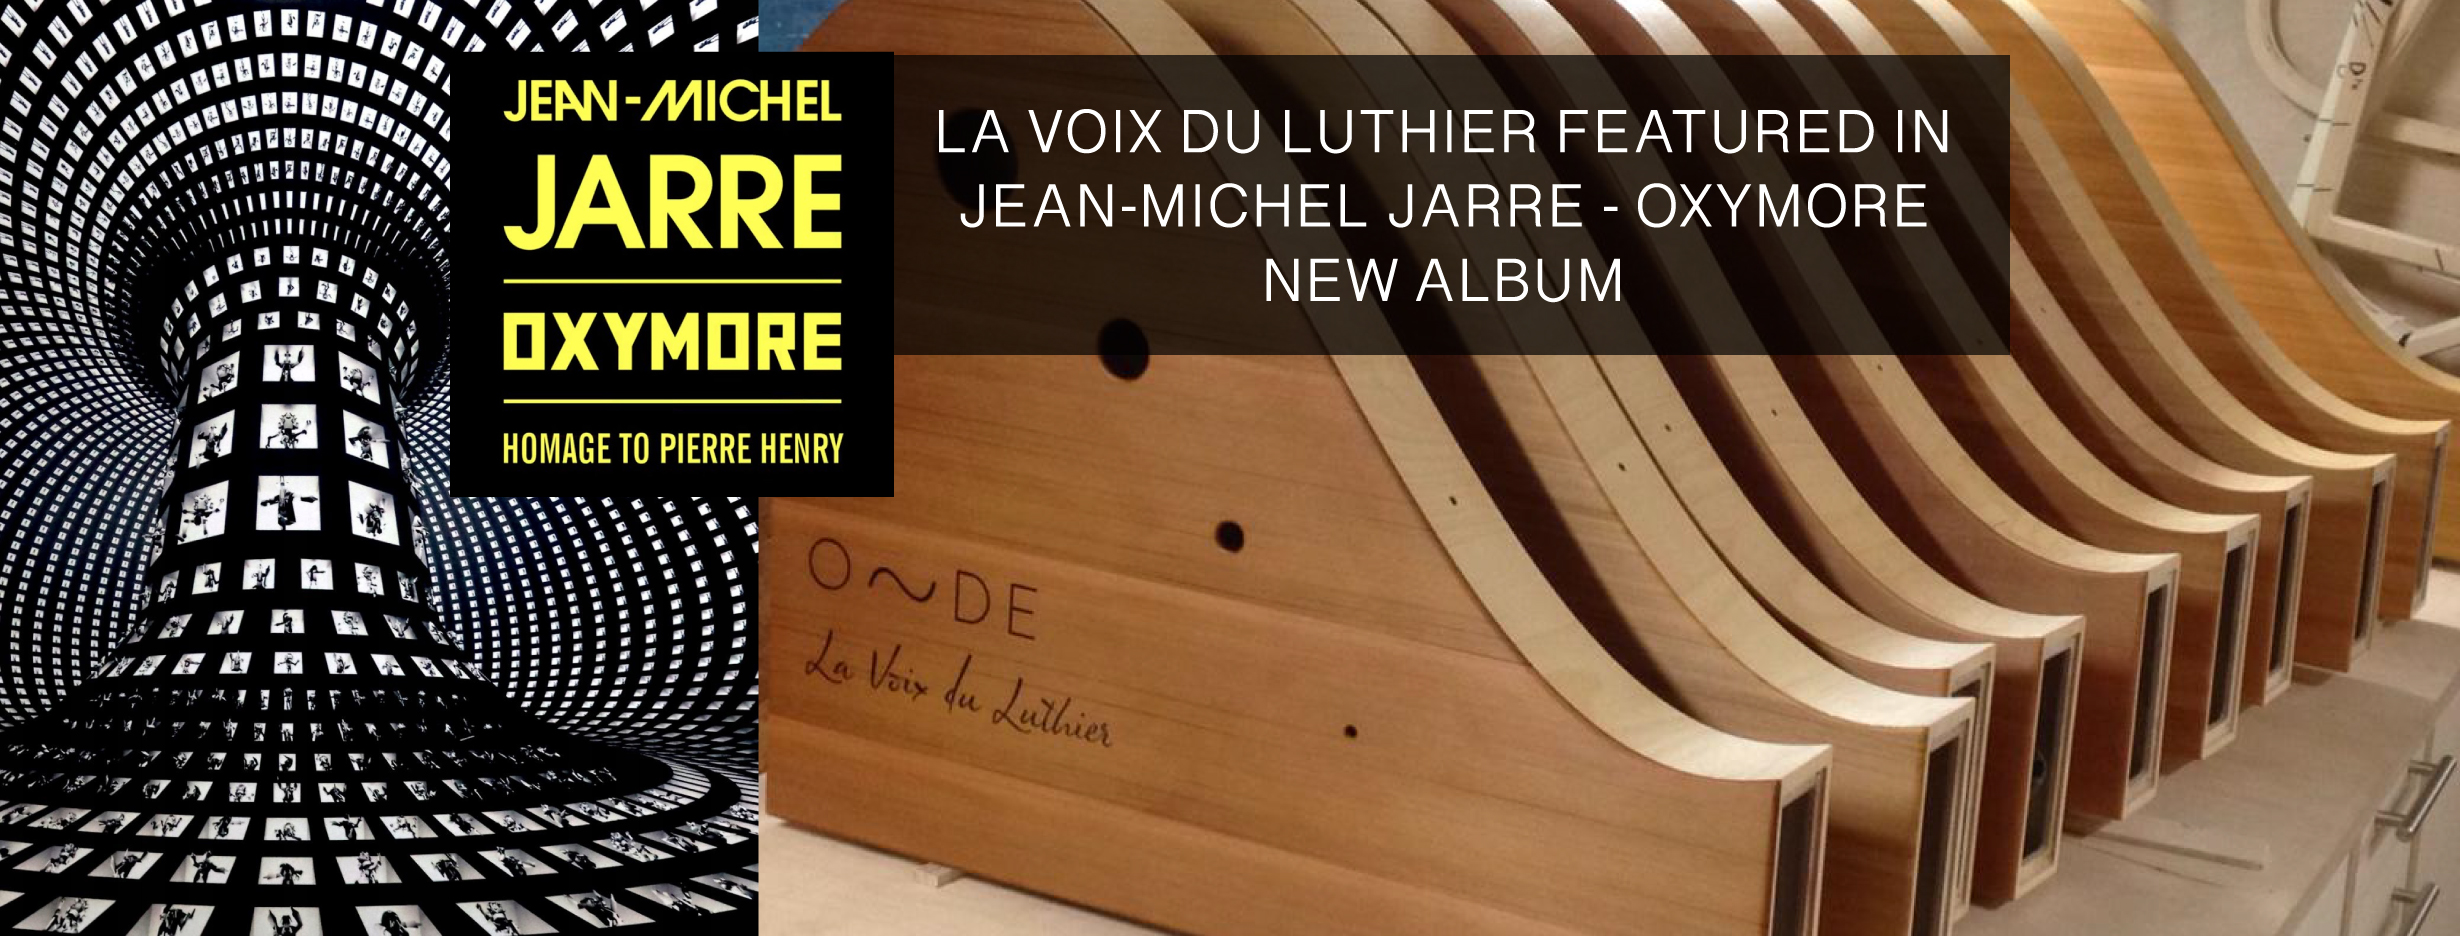 La Voix du Luthier - Jean-Michel Jarre